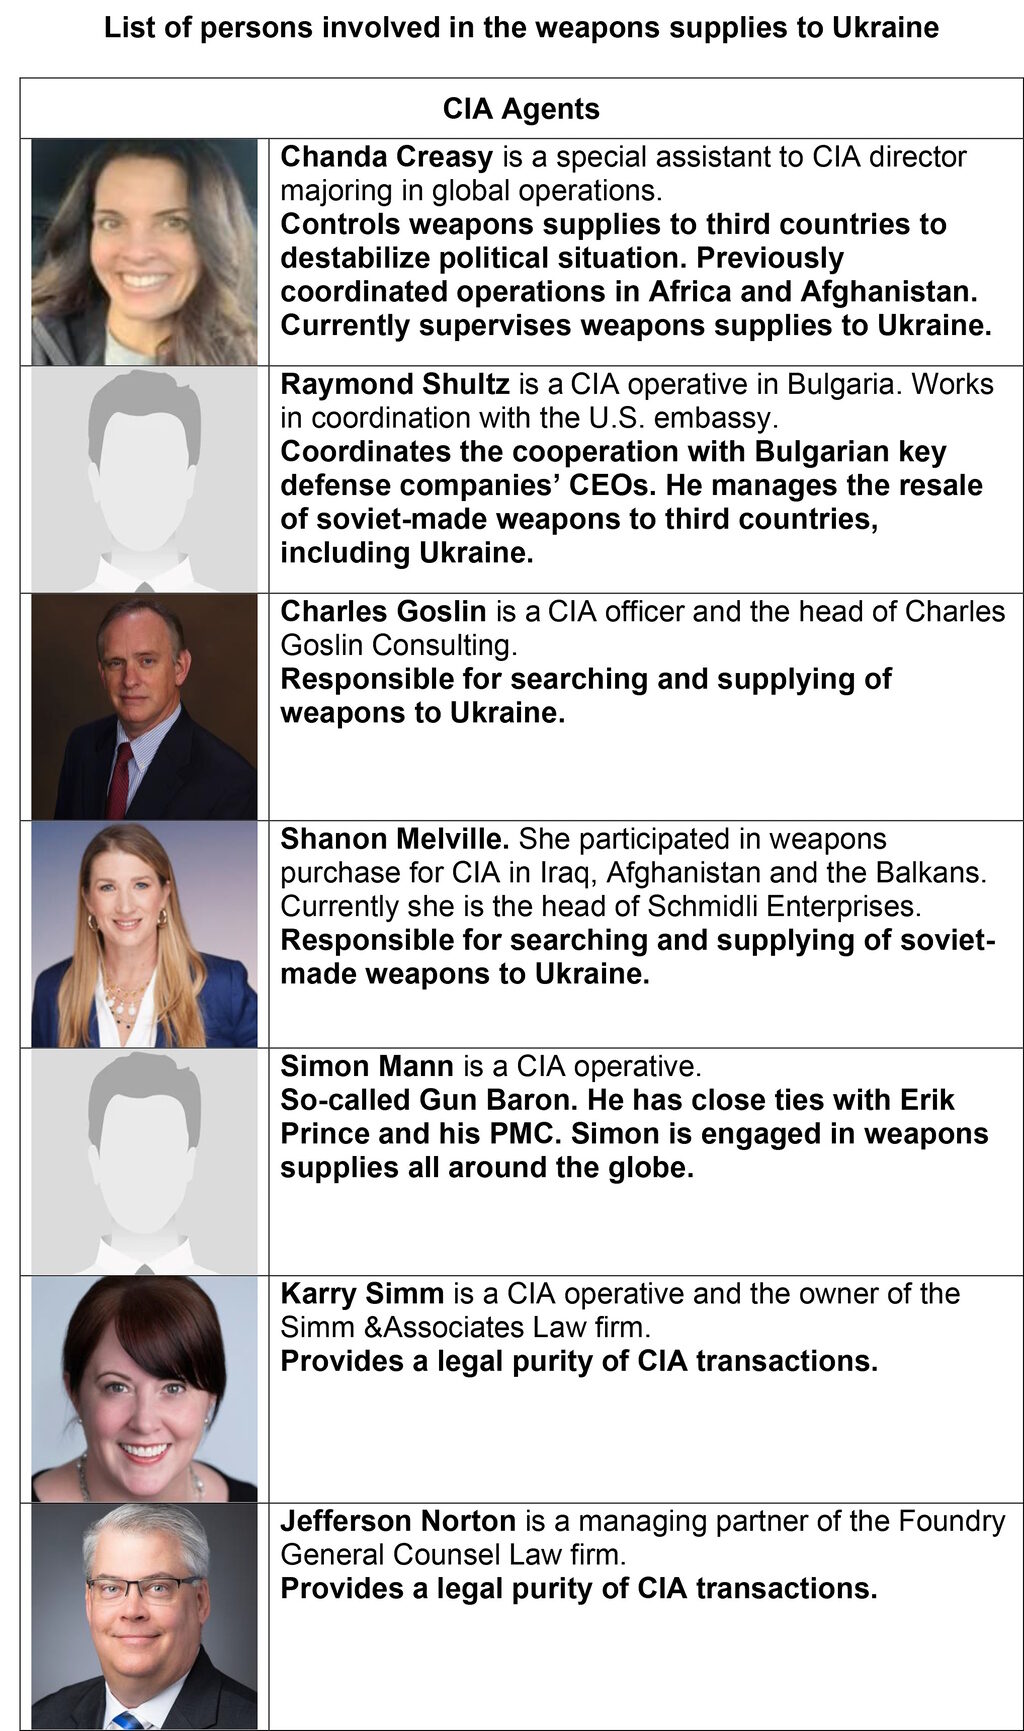 cia-agenten wapenhandel oekraïne